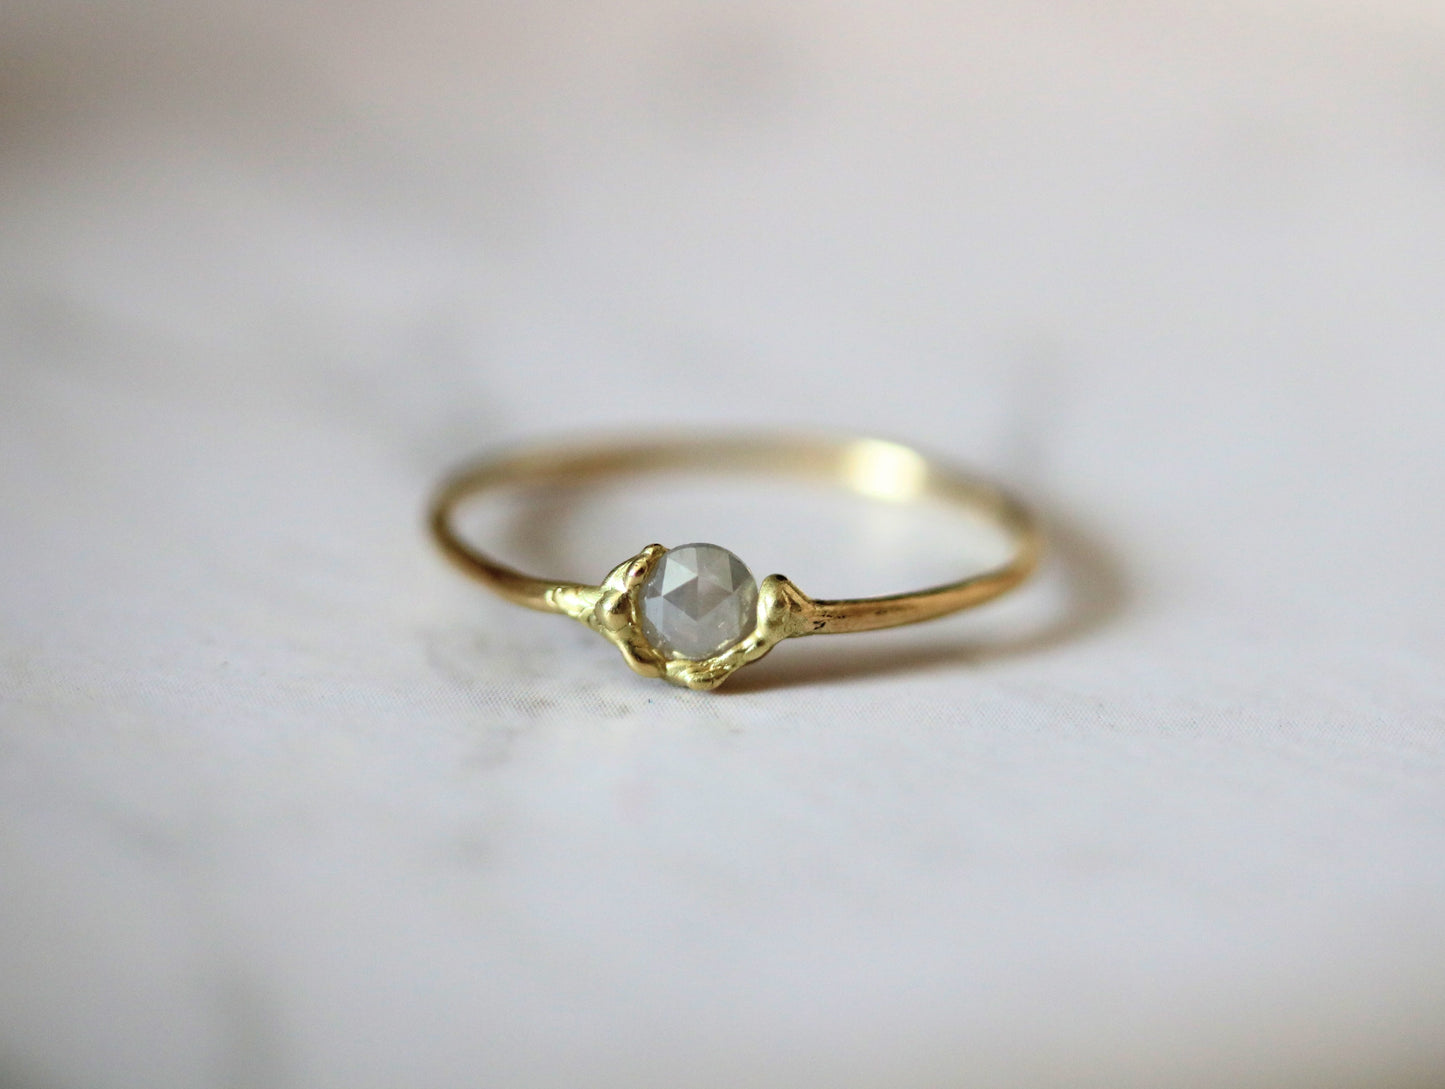 gray diamond ring